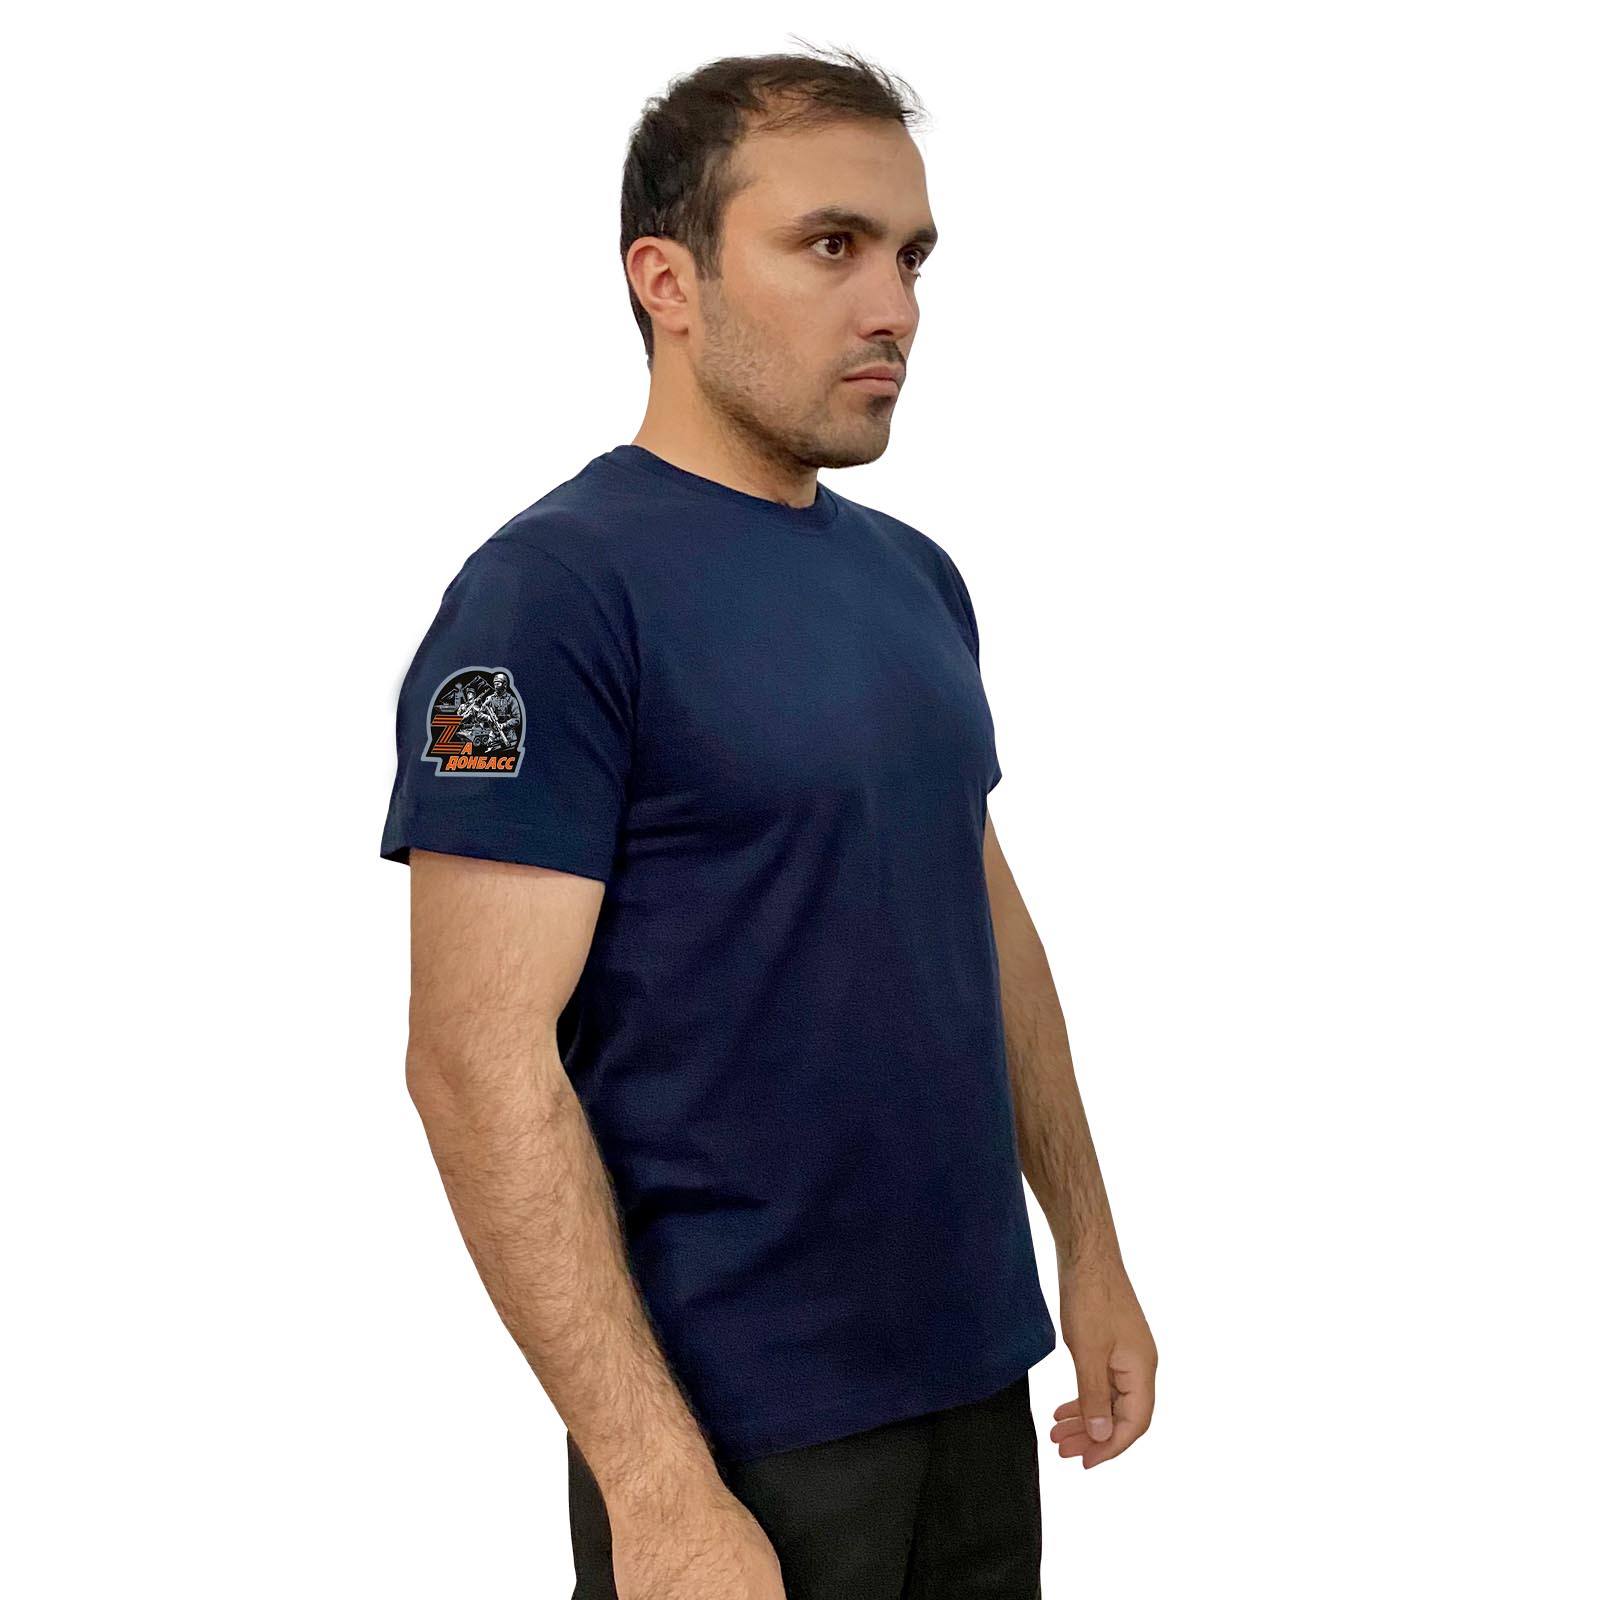 Тёмно-синяя футболка с термопереводкой "Zа Донбасс" на рукаве